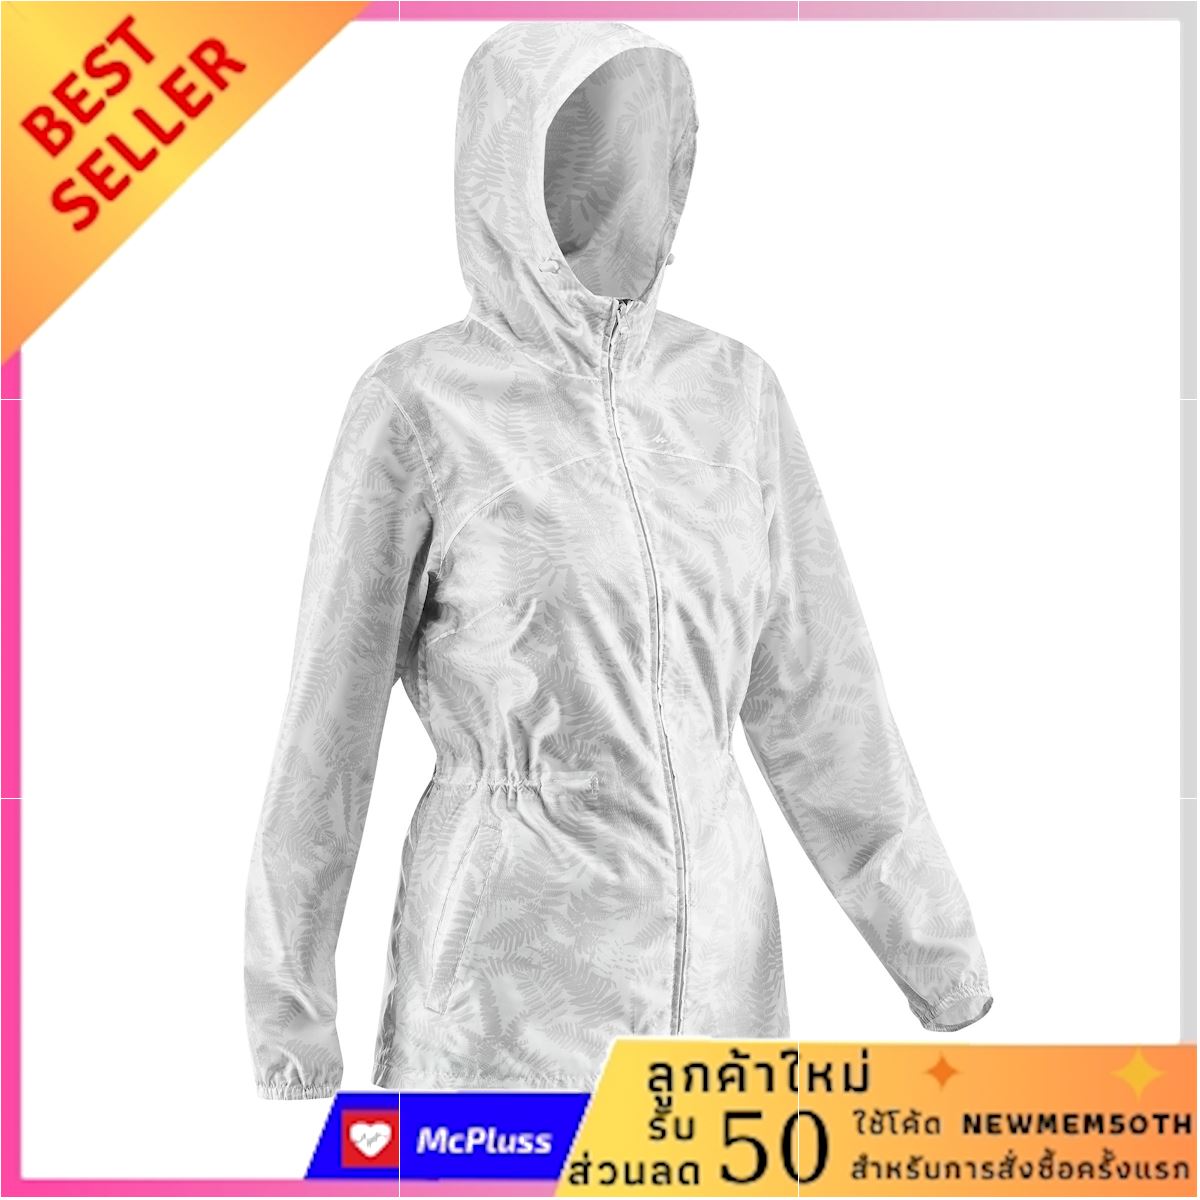 เสื้อแจ็คเก็ตกันฝนผู้หญิงสำหรับใส่เดินในเส้นทางธรรมชาติรุ่น NH100 Raincut Full Zip คุ้มค่า คุ้มราคา